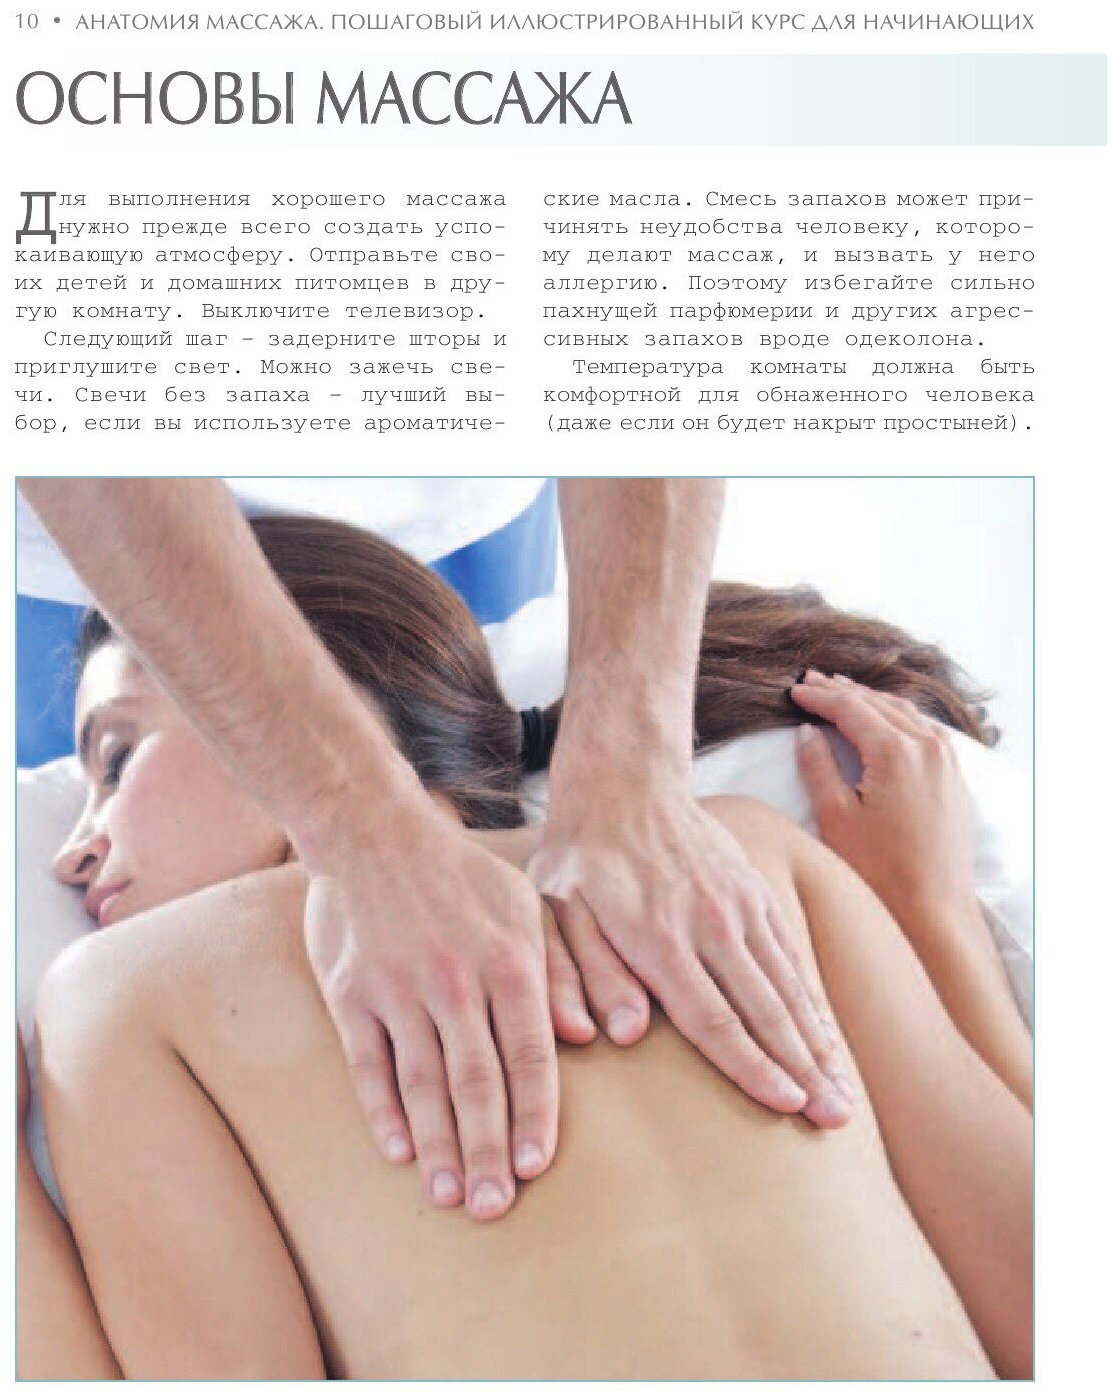 Анатомия массажа. Пошаговый иллюстрированный курс для начинающих - фото №15